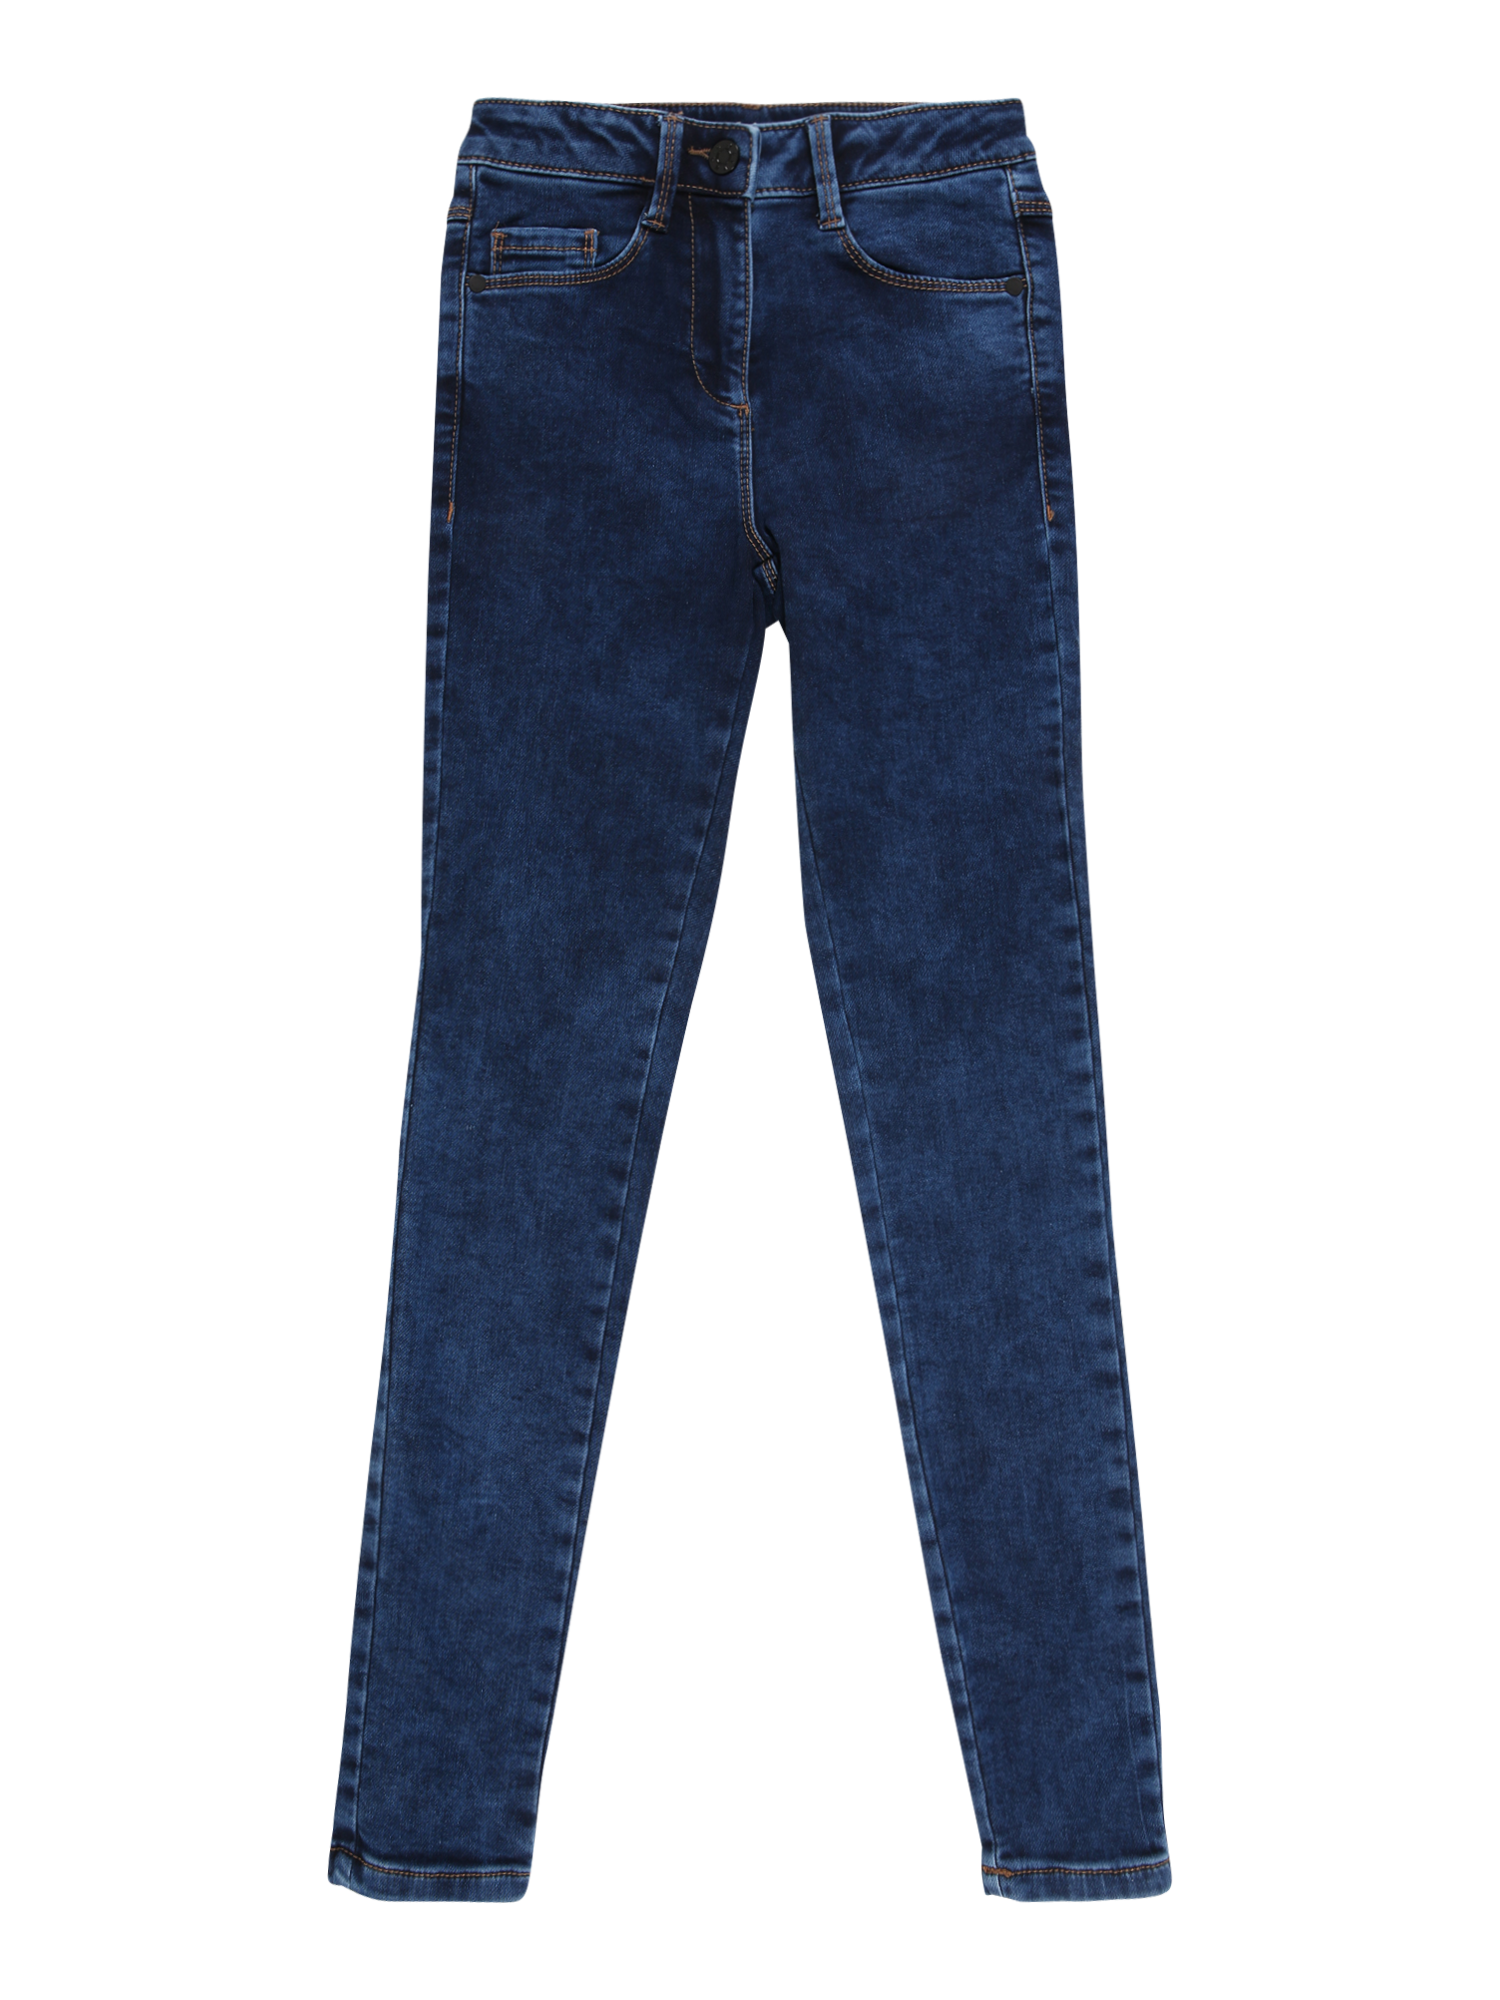 Bimba Bambina (taglie 92-140) s.Oliver Jeans SURI in Blu 